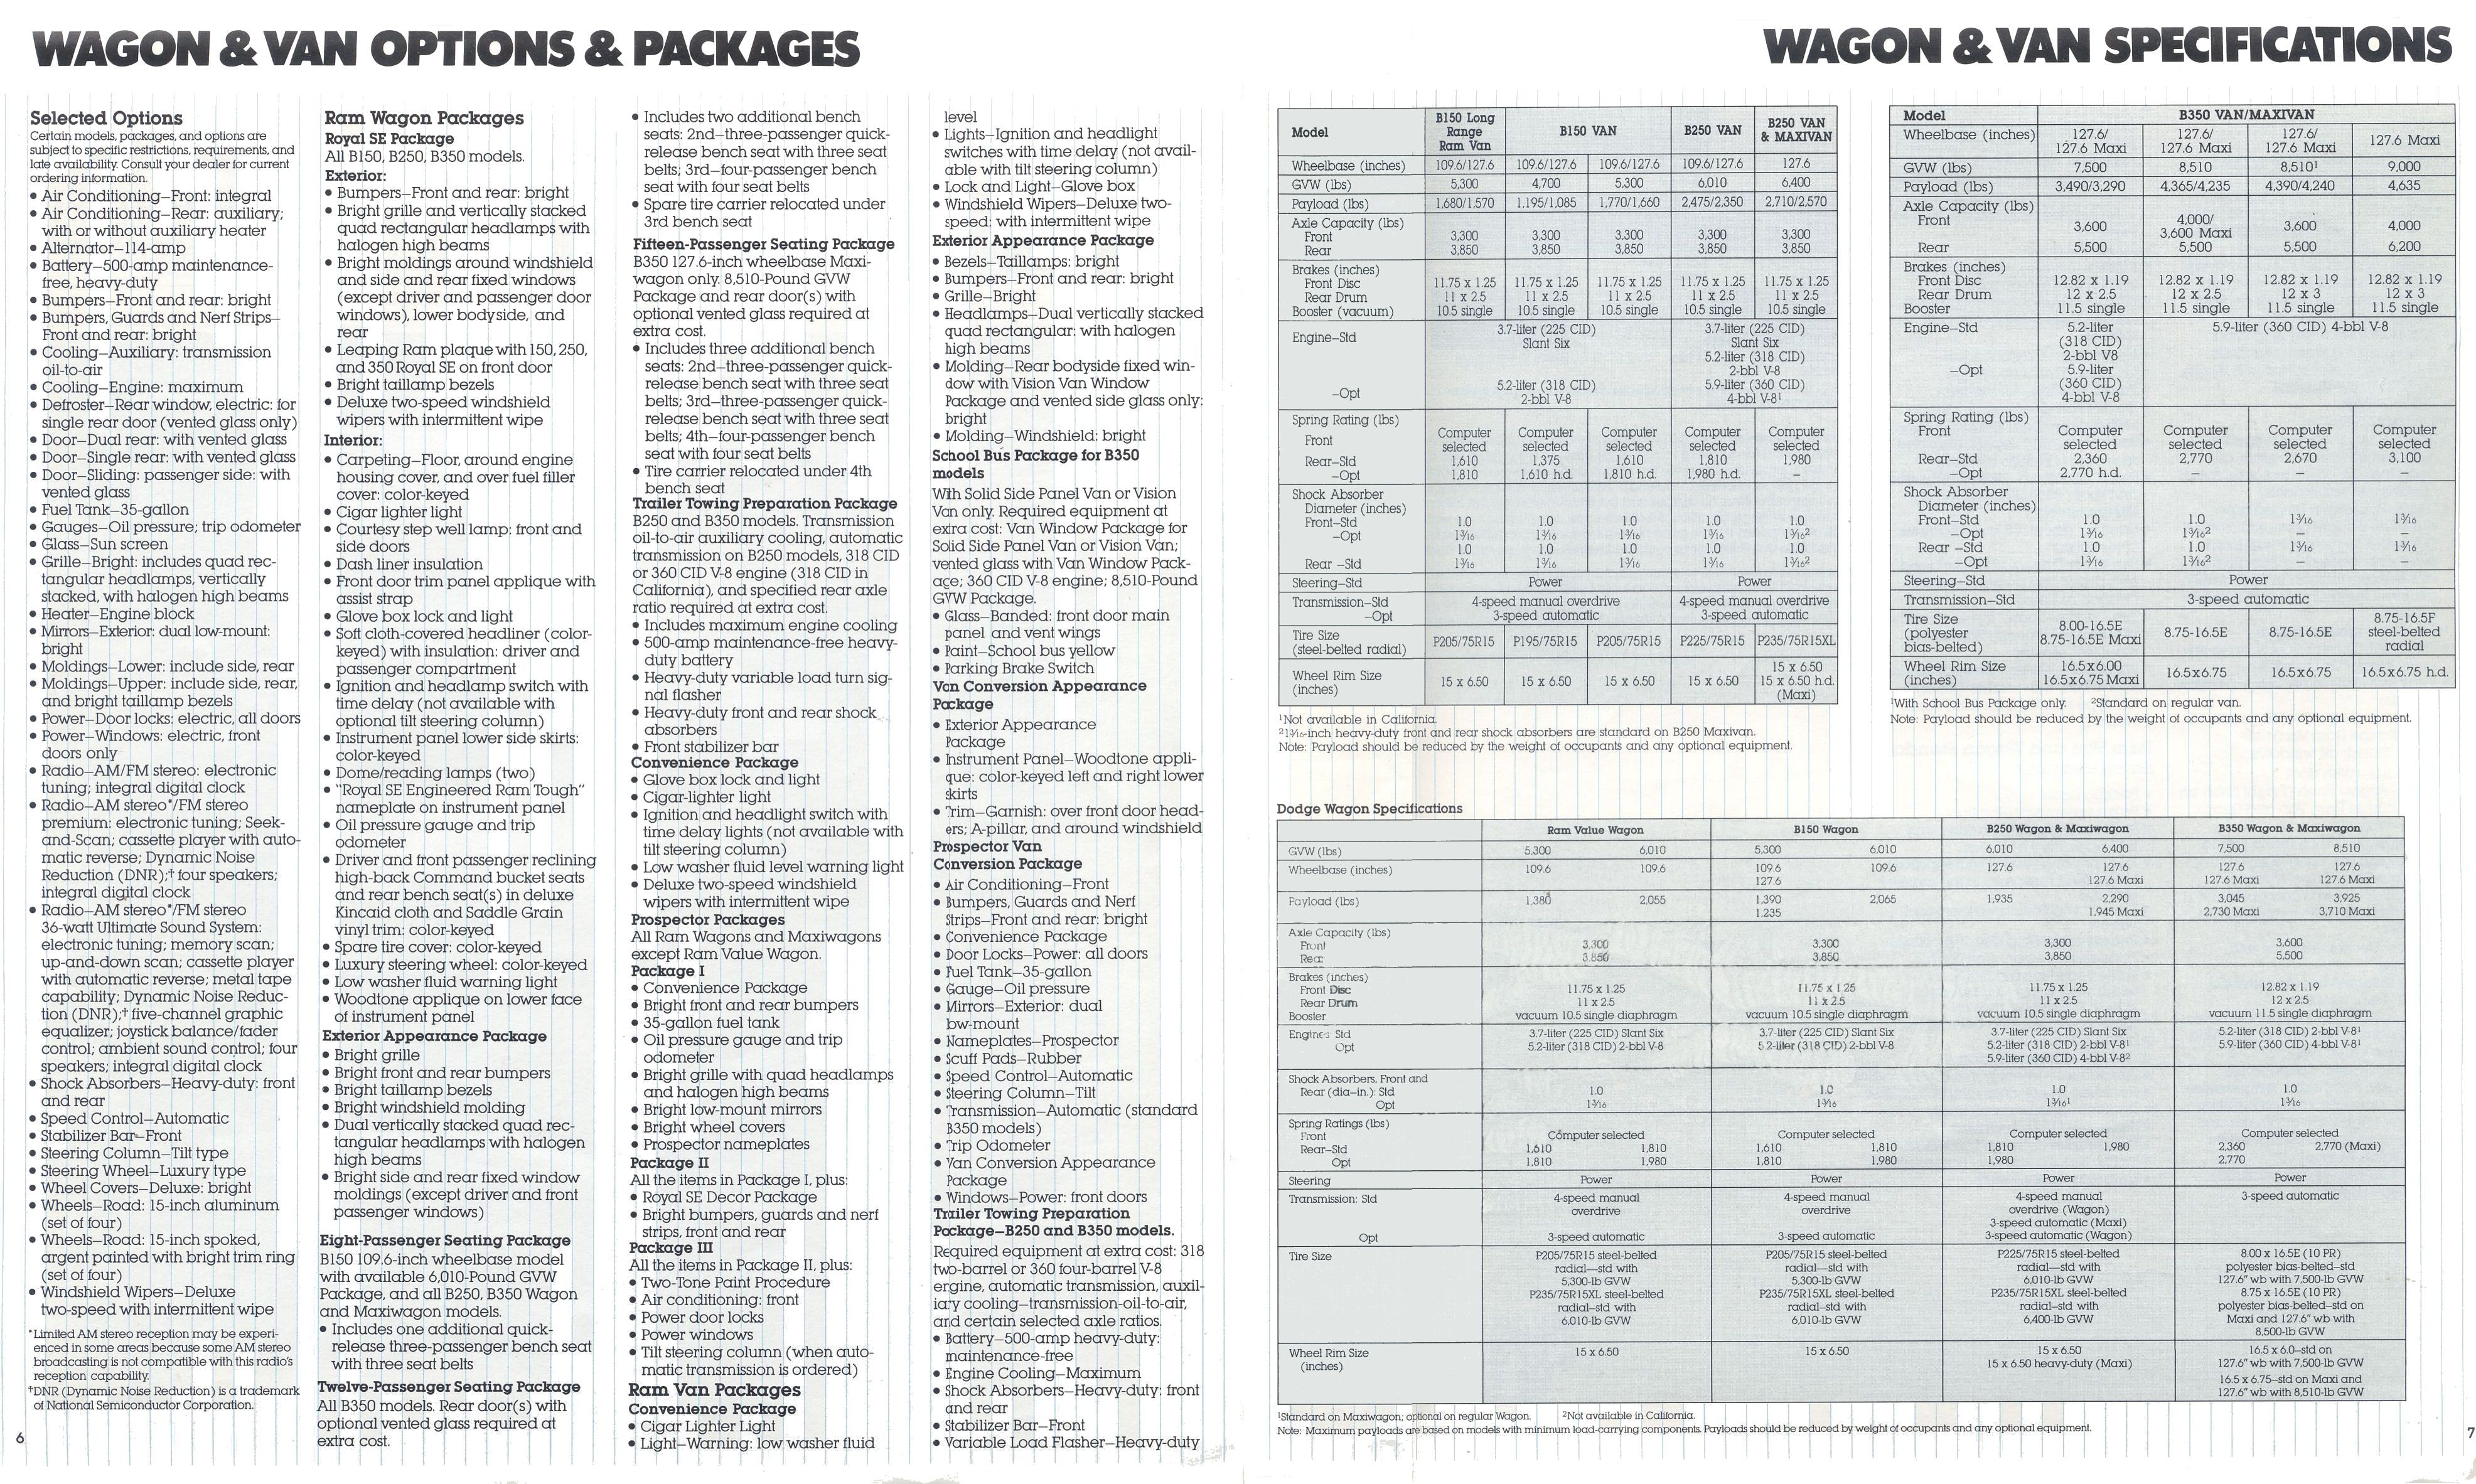 1985 Dodge Wgons & Vans brochure